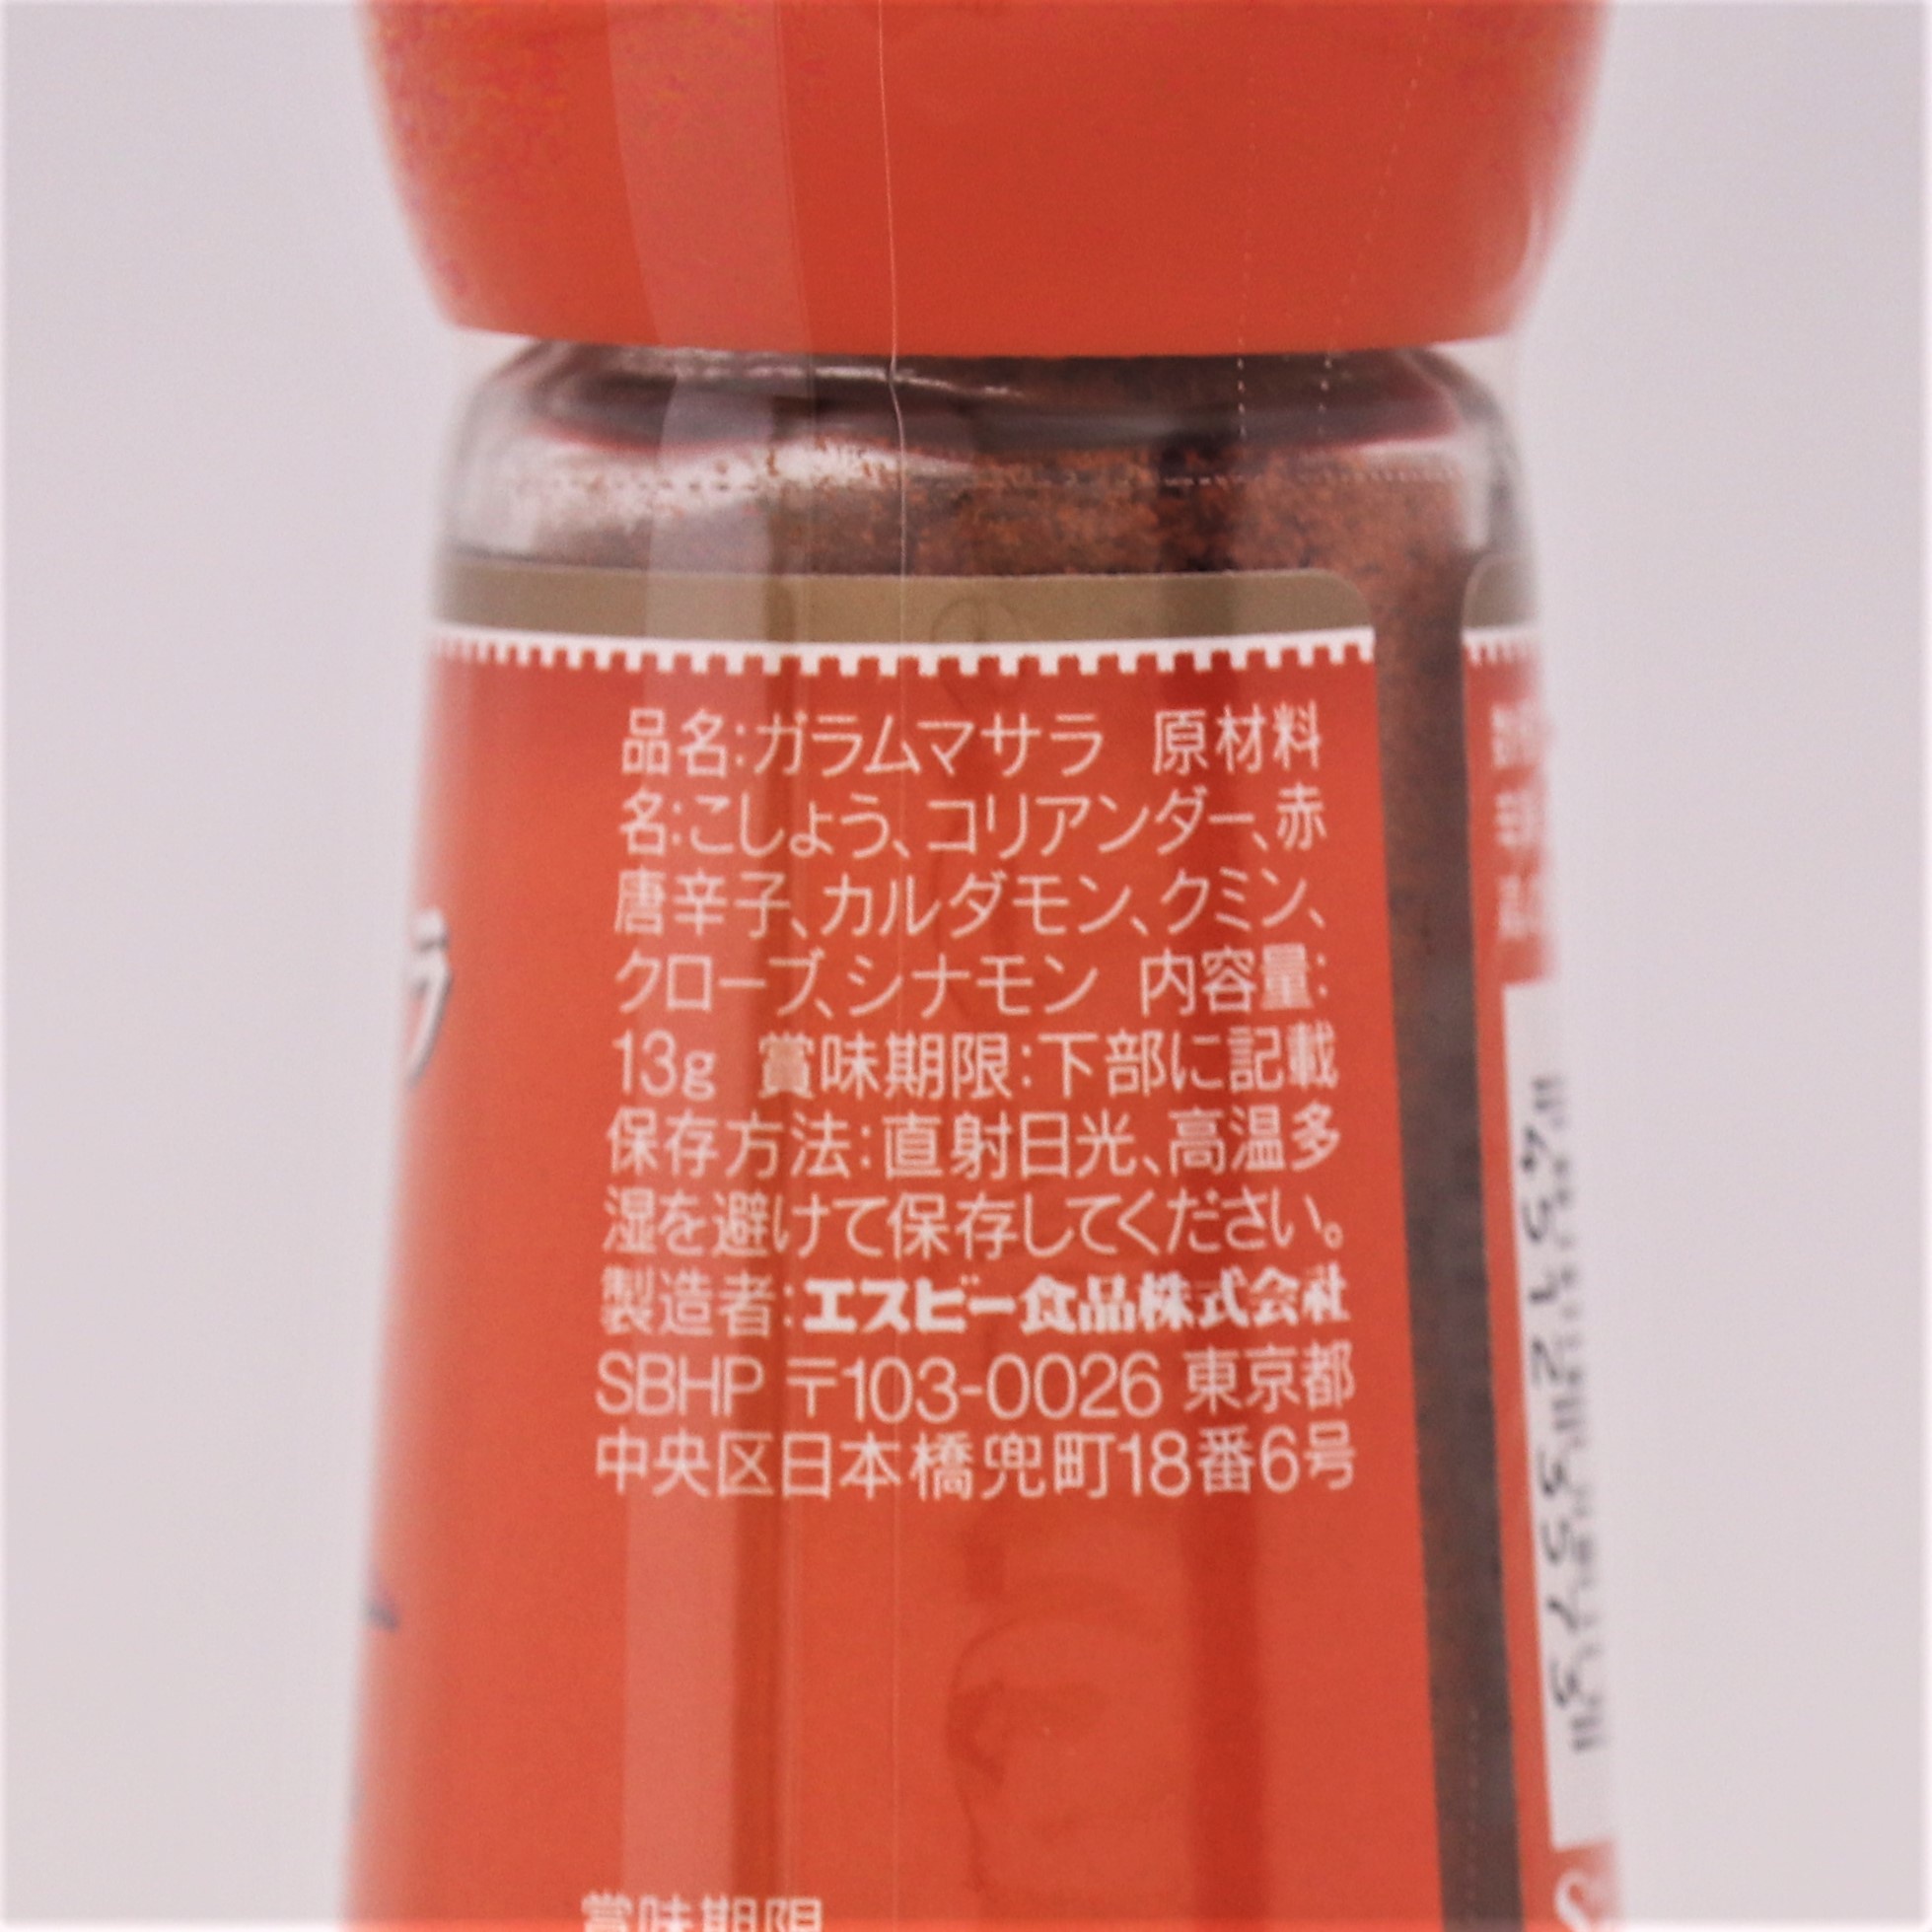 ヱスビー食品 S&Bガラムマサラ(辛味スパイス)瓶 13g